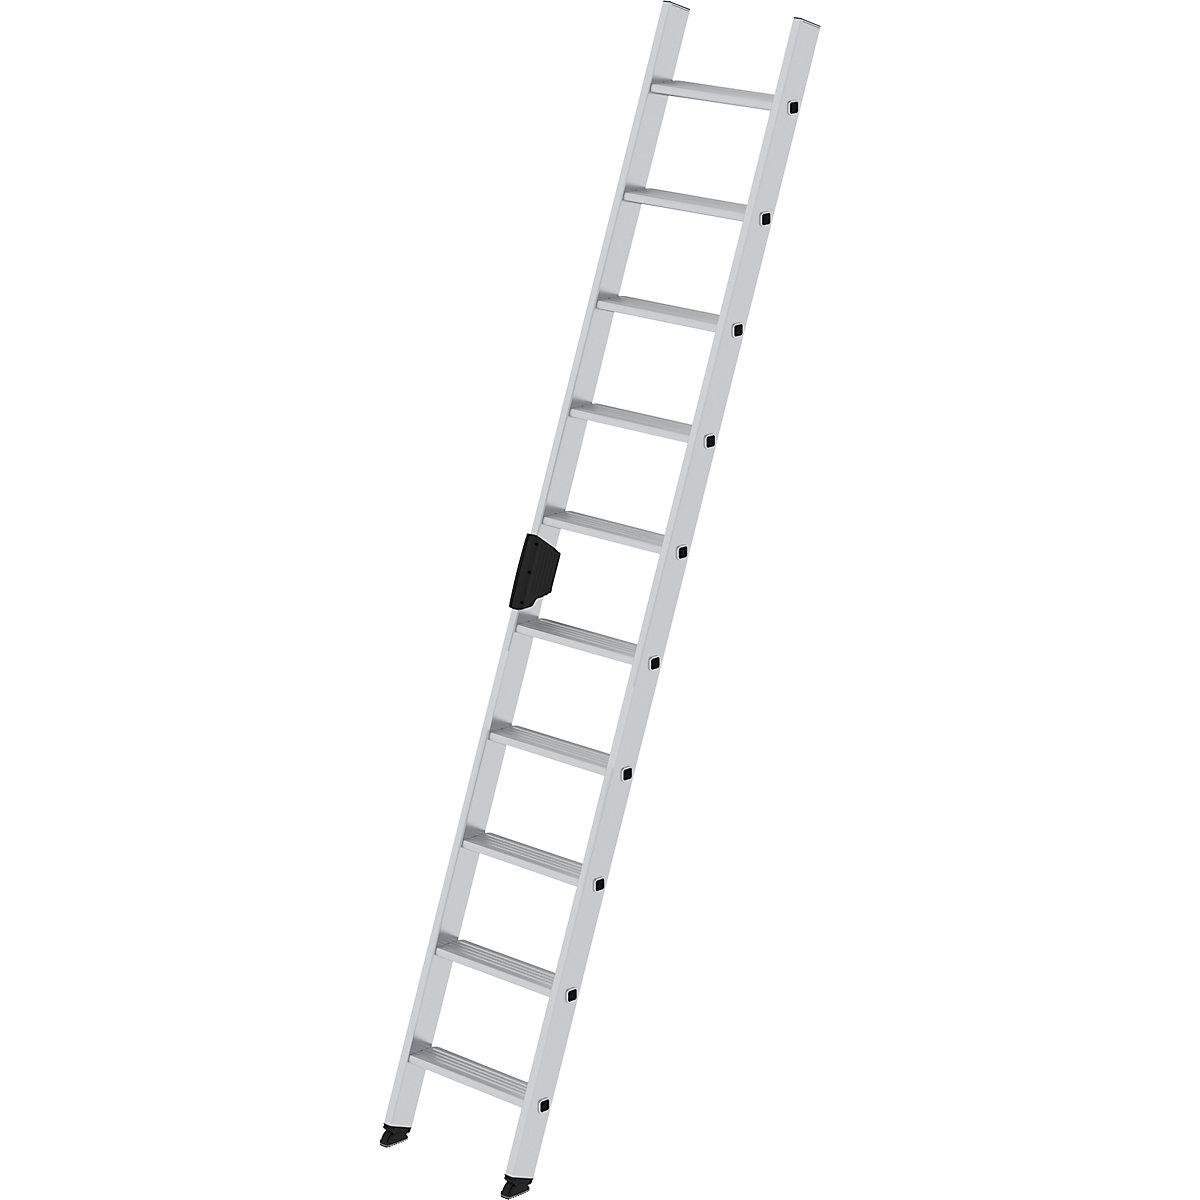 Prislonska lestev s stopnicami – MUNK, profesionalna izvedba, širina 420 mm, 10 stopnic, stranica 58 x 25 mm-9